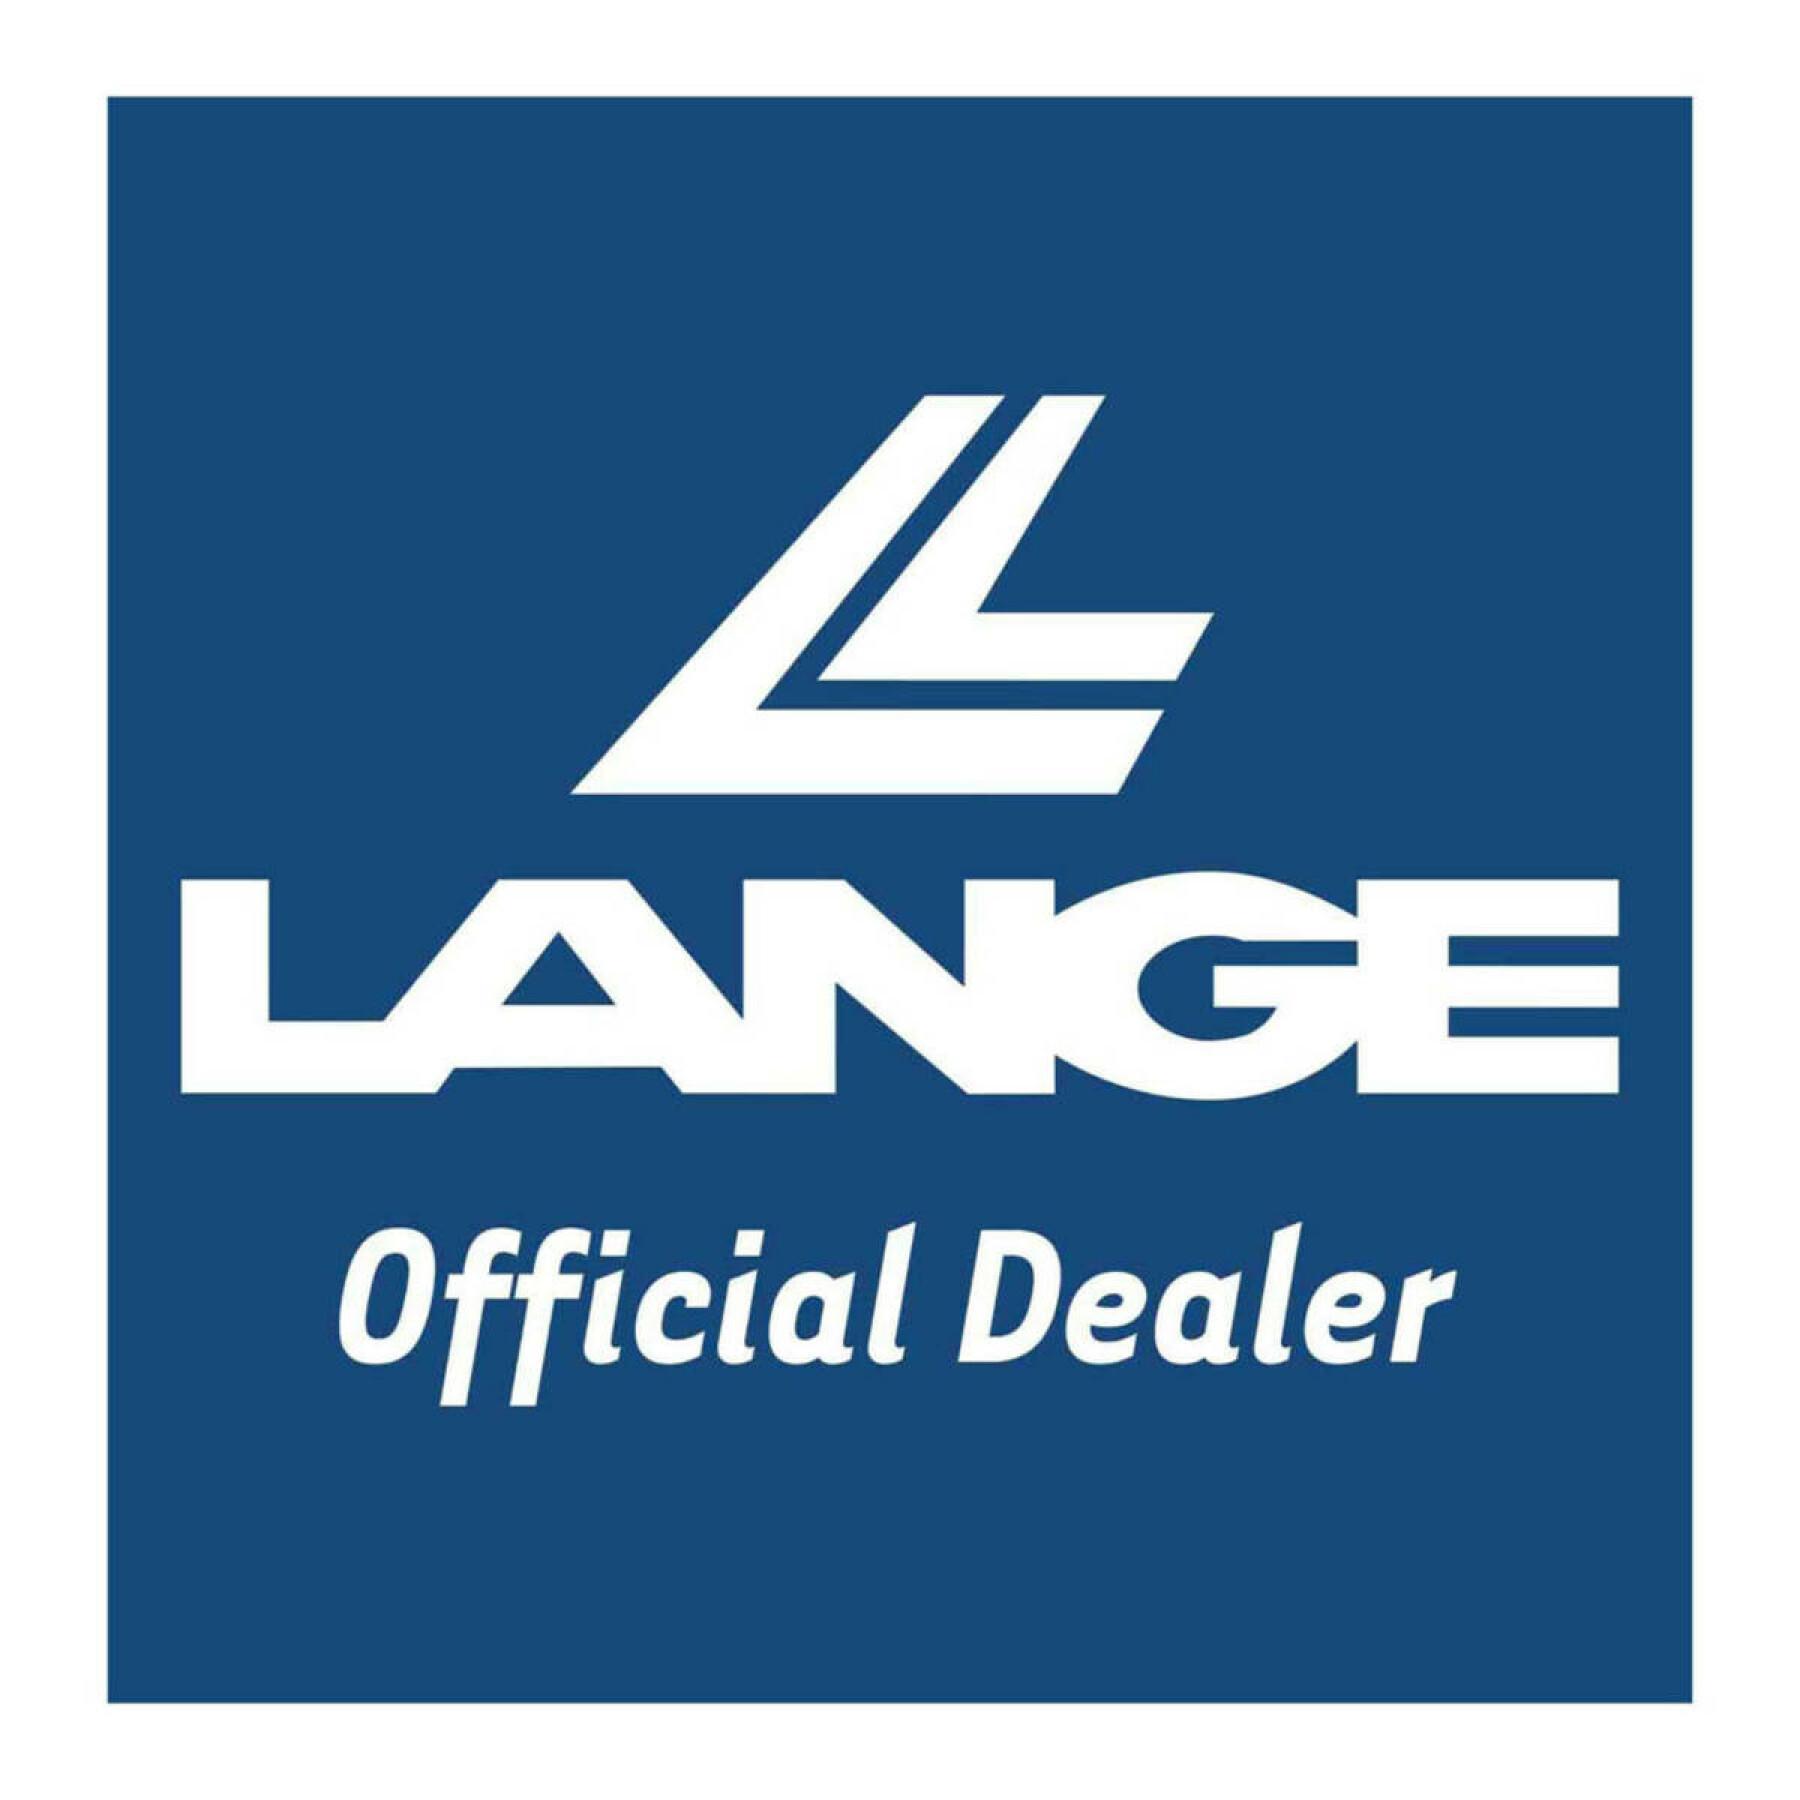 Adesivi Lange L2 official dealer